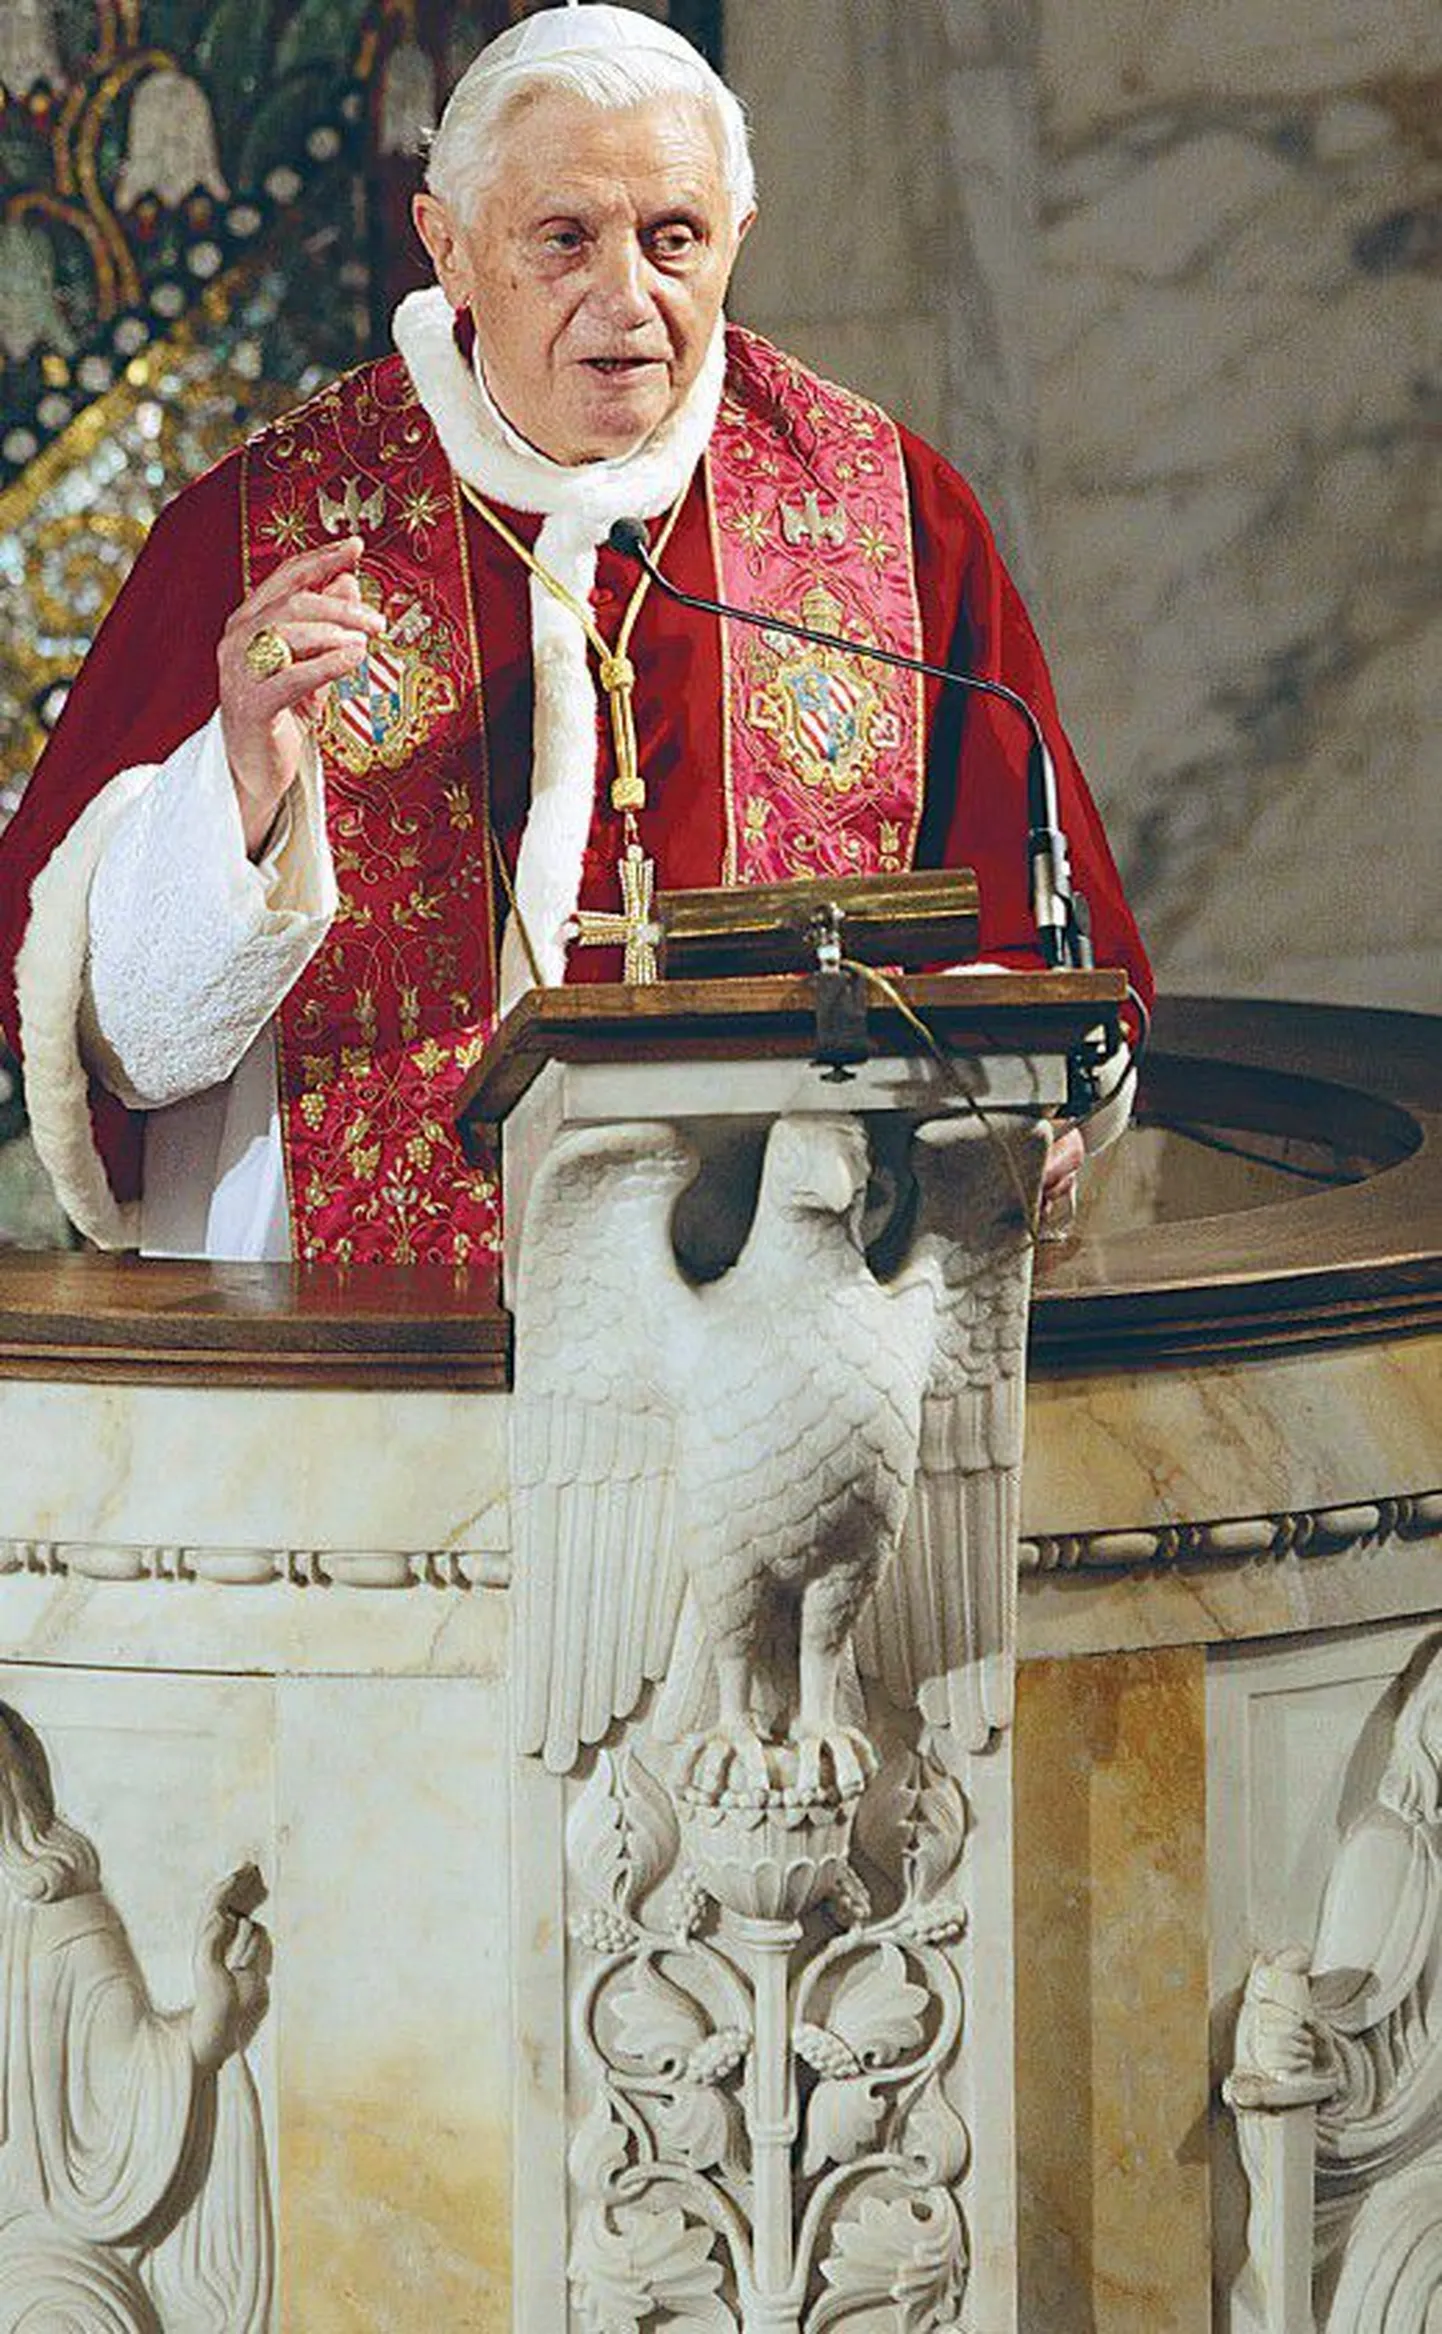 Папа Бенедикт XVI, при котором во многих частях мира получили огласку случаи сексуального насилия над несовершеннолетникми, имевшие место несколько десятилетий назад, хочет выступить против роста подобных преступлений в лоне церкви.